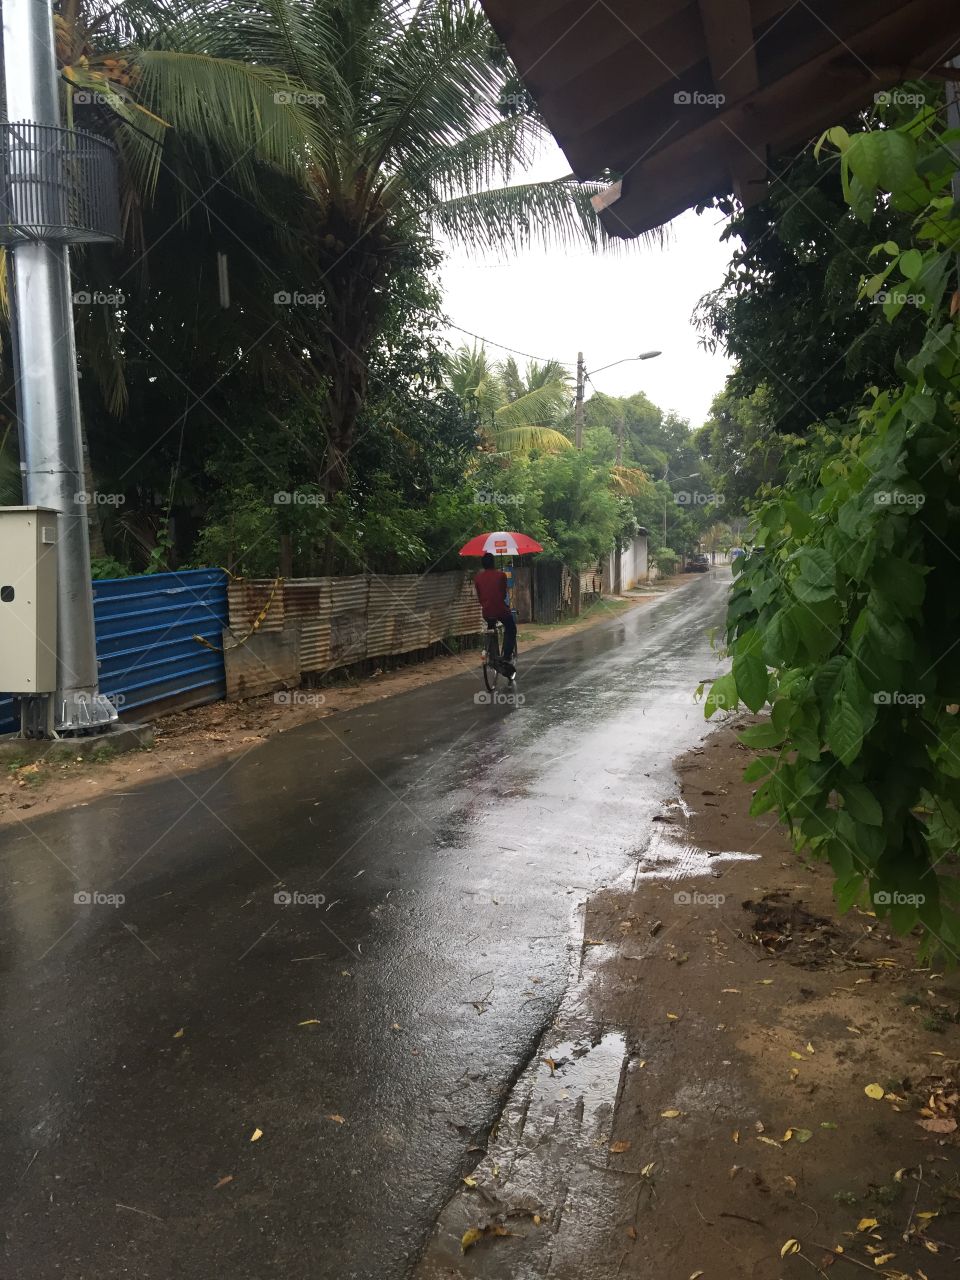 A to B Ride with rainy season